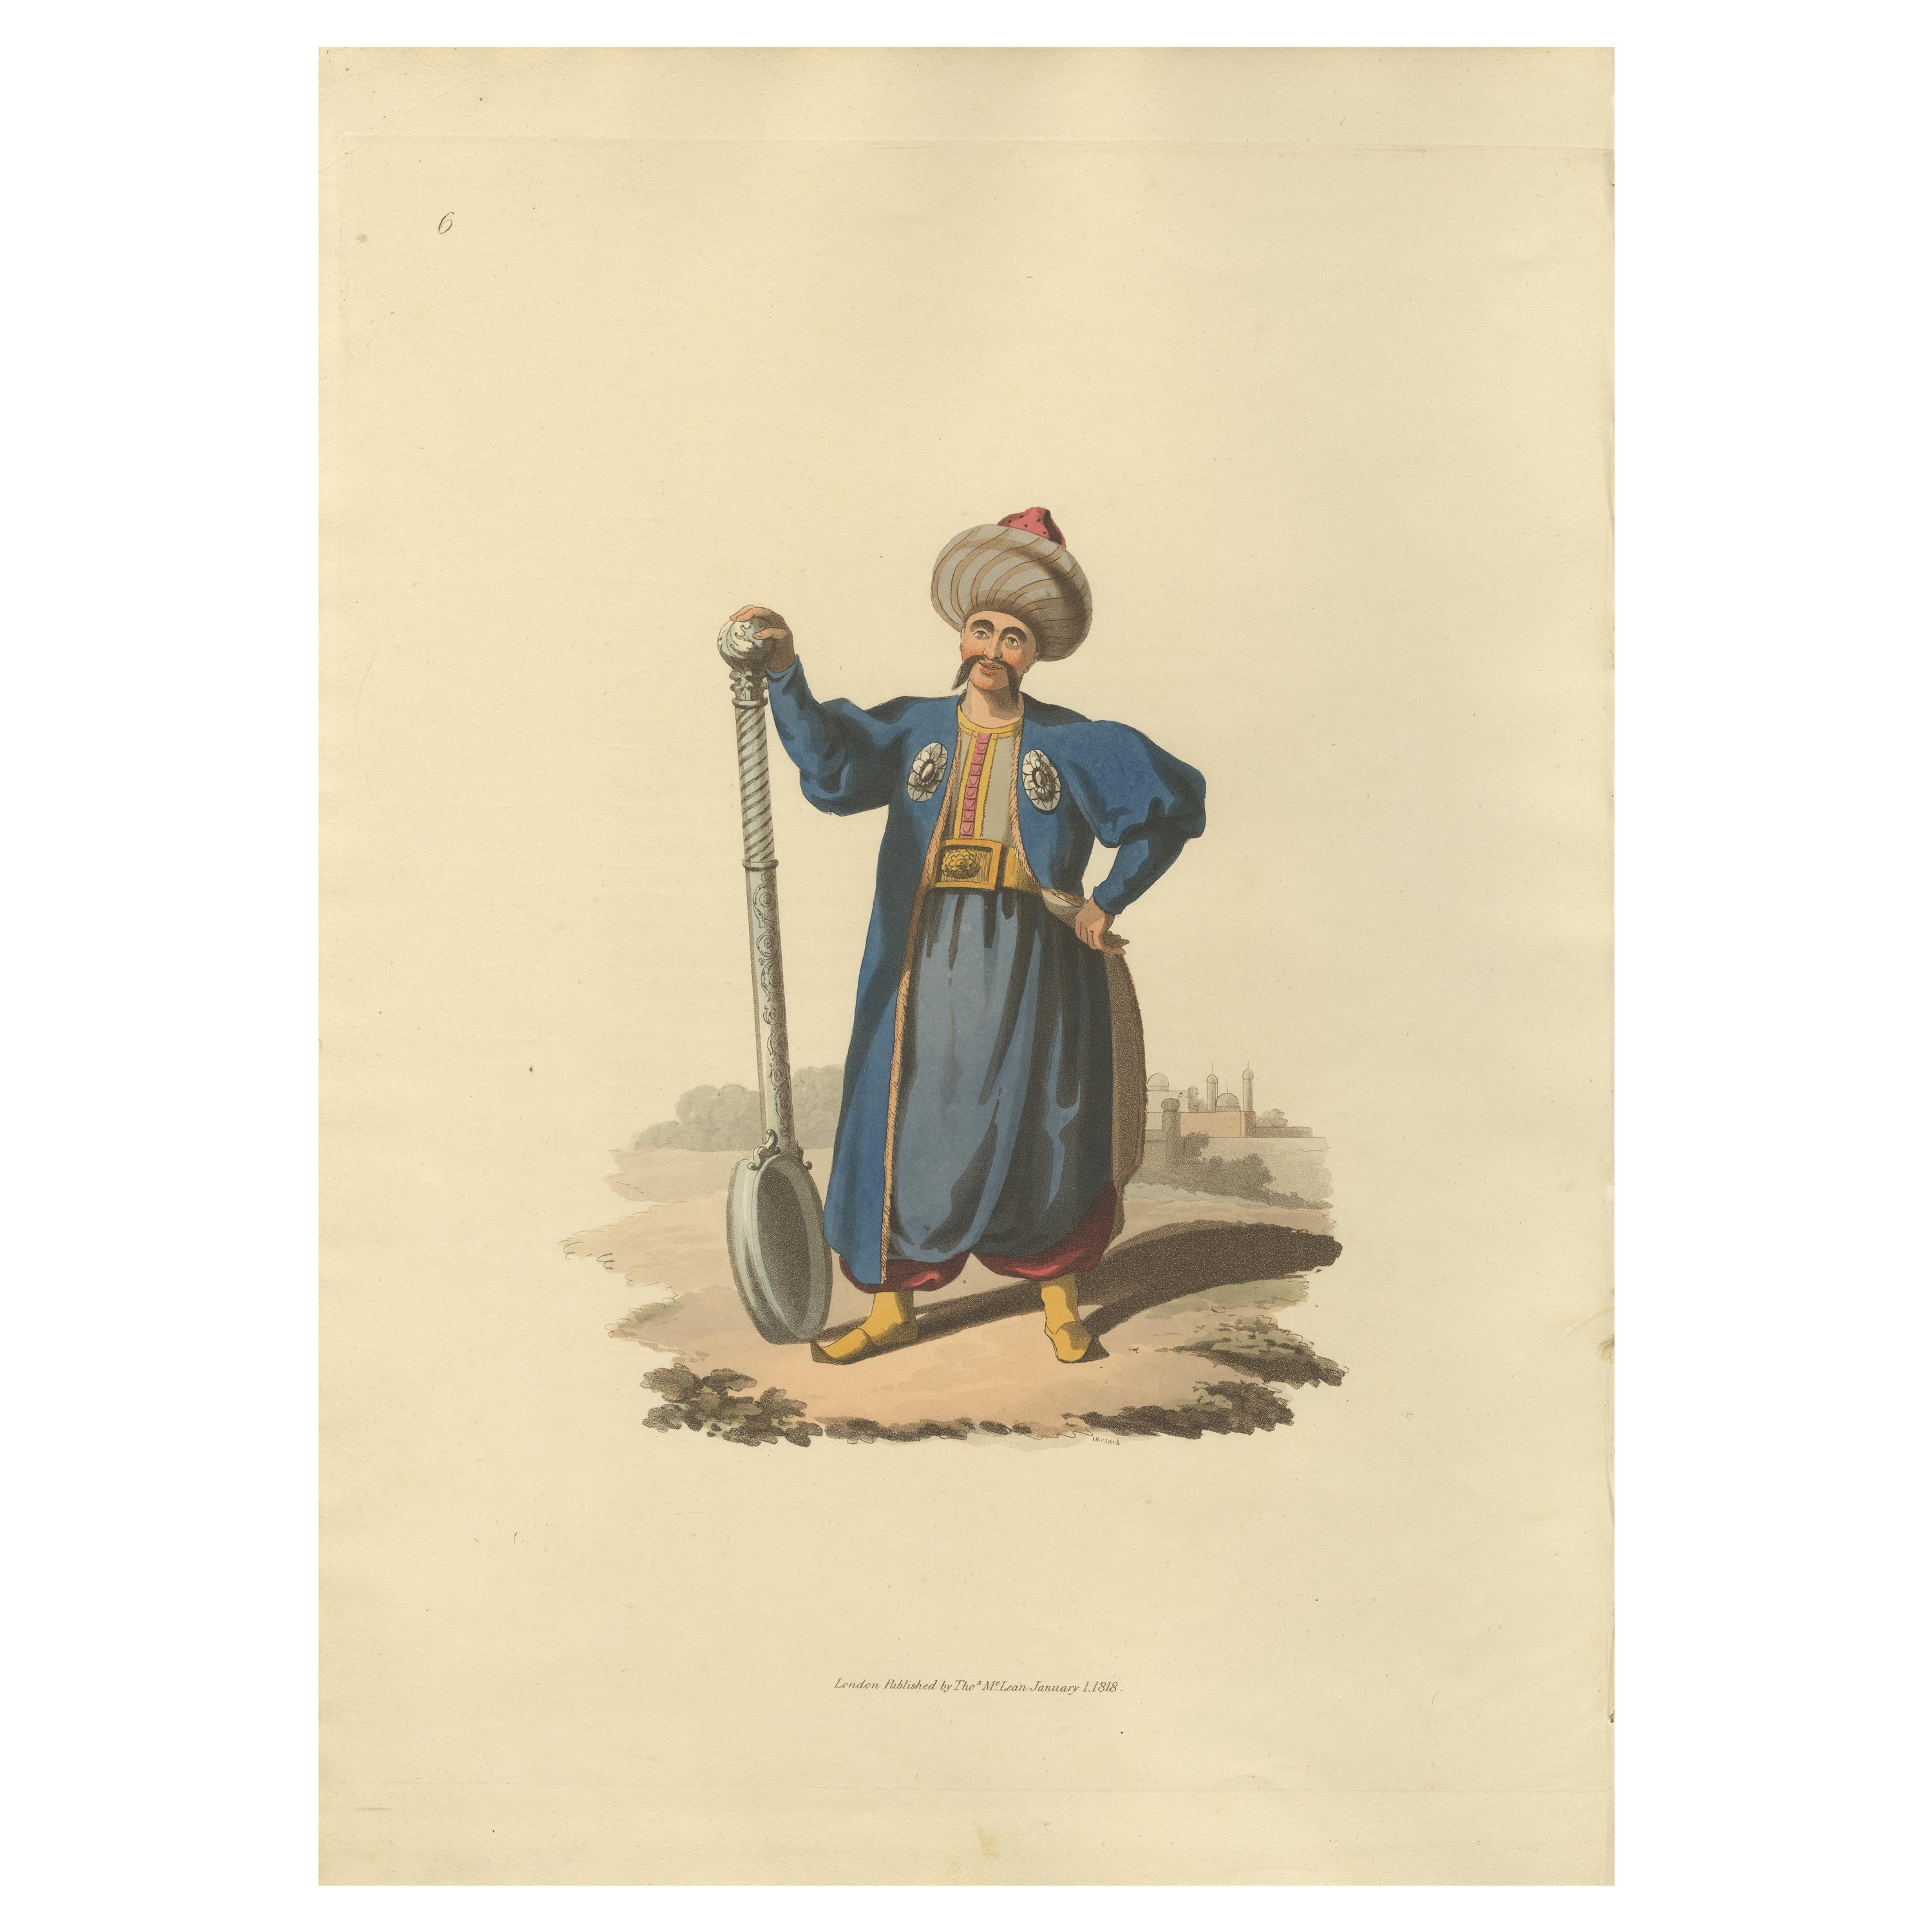 Impression ancienne d'un porteur de louche, « The Military Costume of Turkey » (La costume militaire de Turquie), 1818